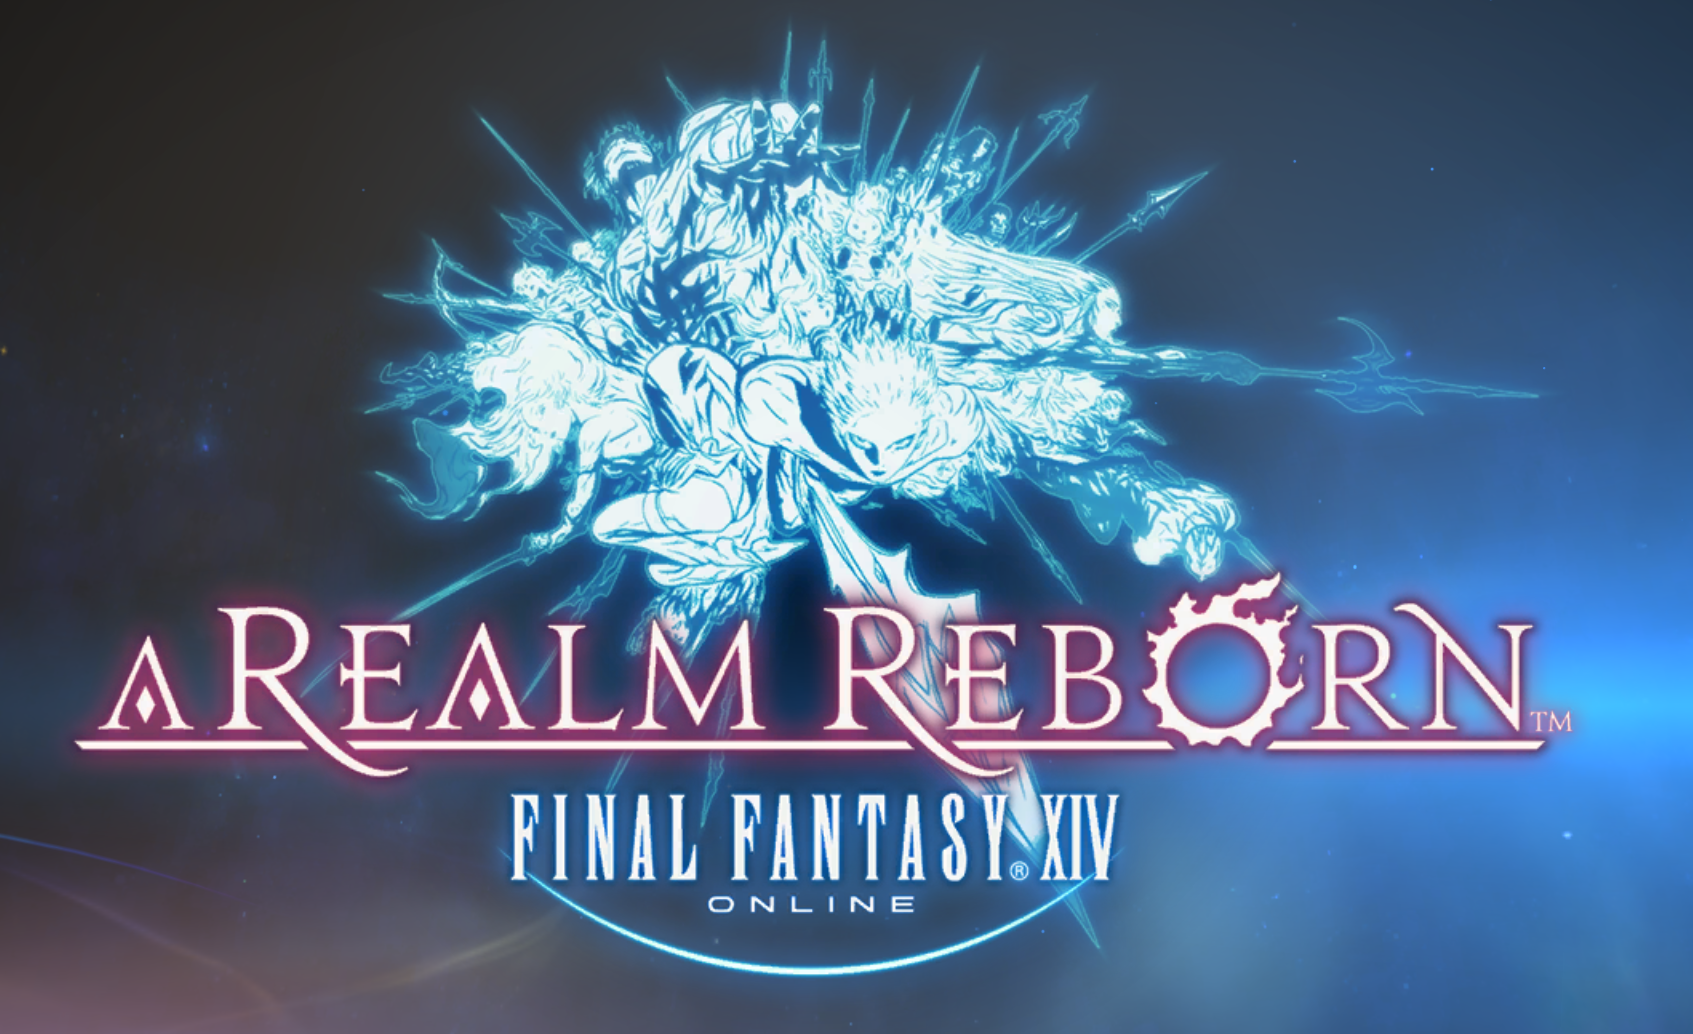 I’m Playing Final Fantasy XIV – Preamble